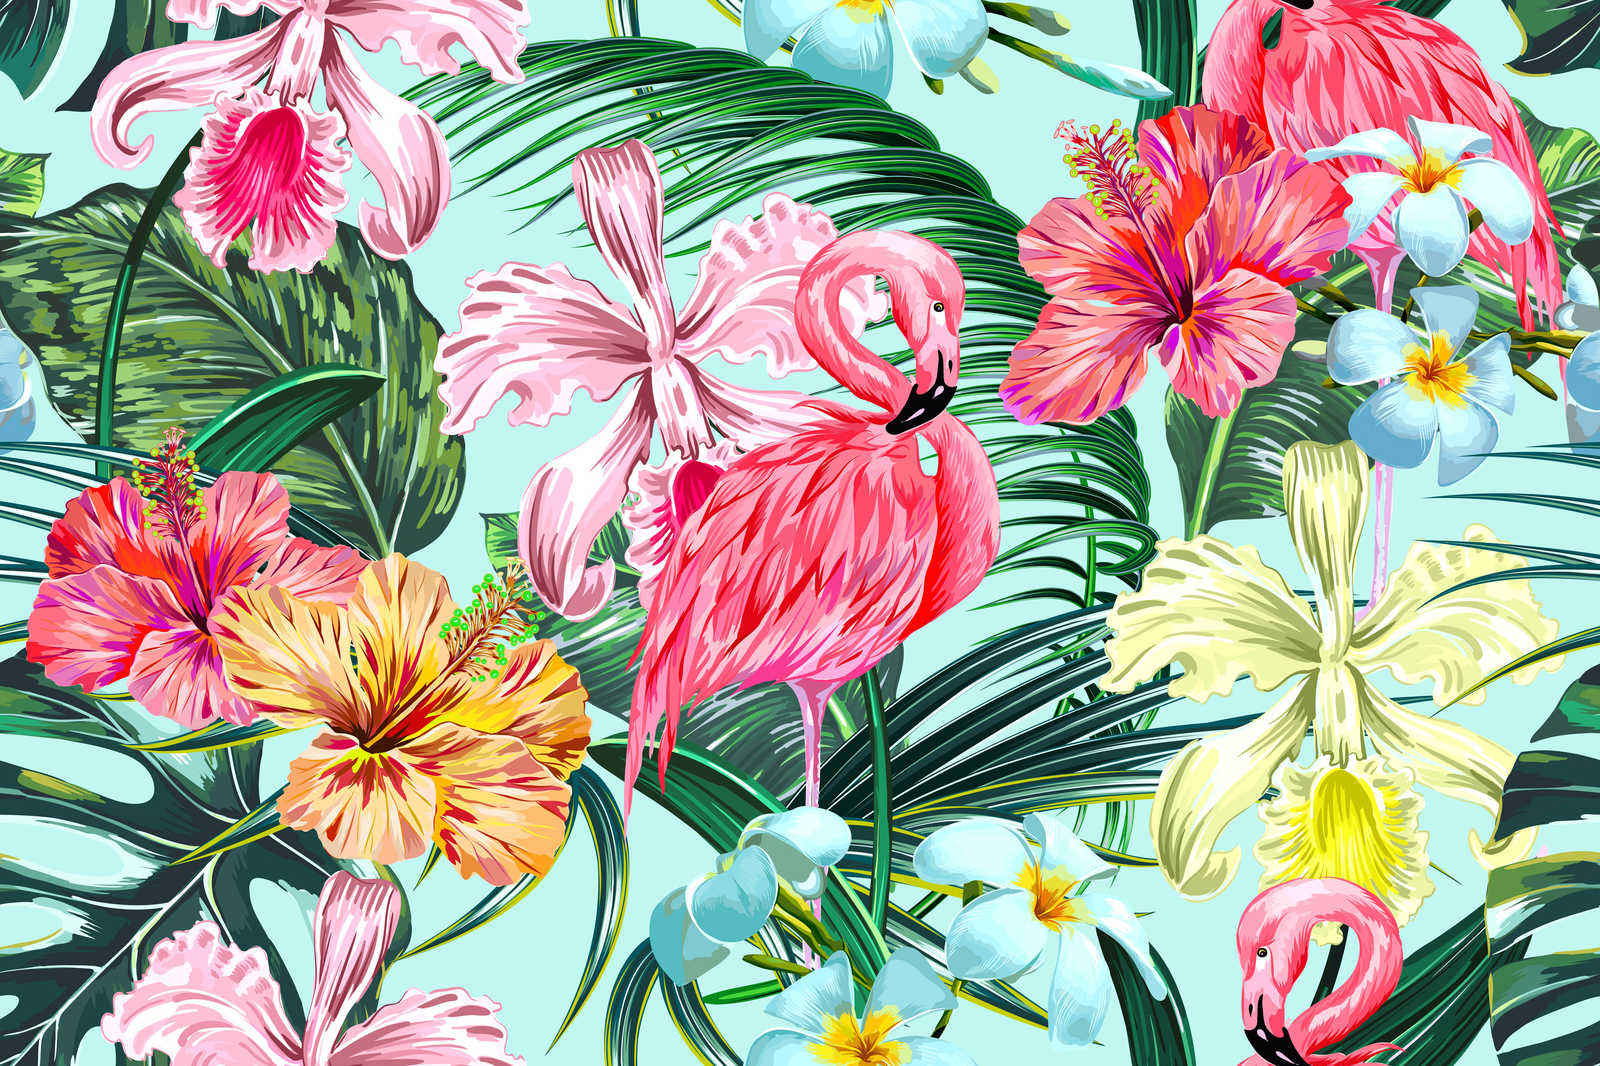             Tropisch canvas met flamingo - 0,90 m x 0,60 m
        